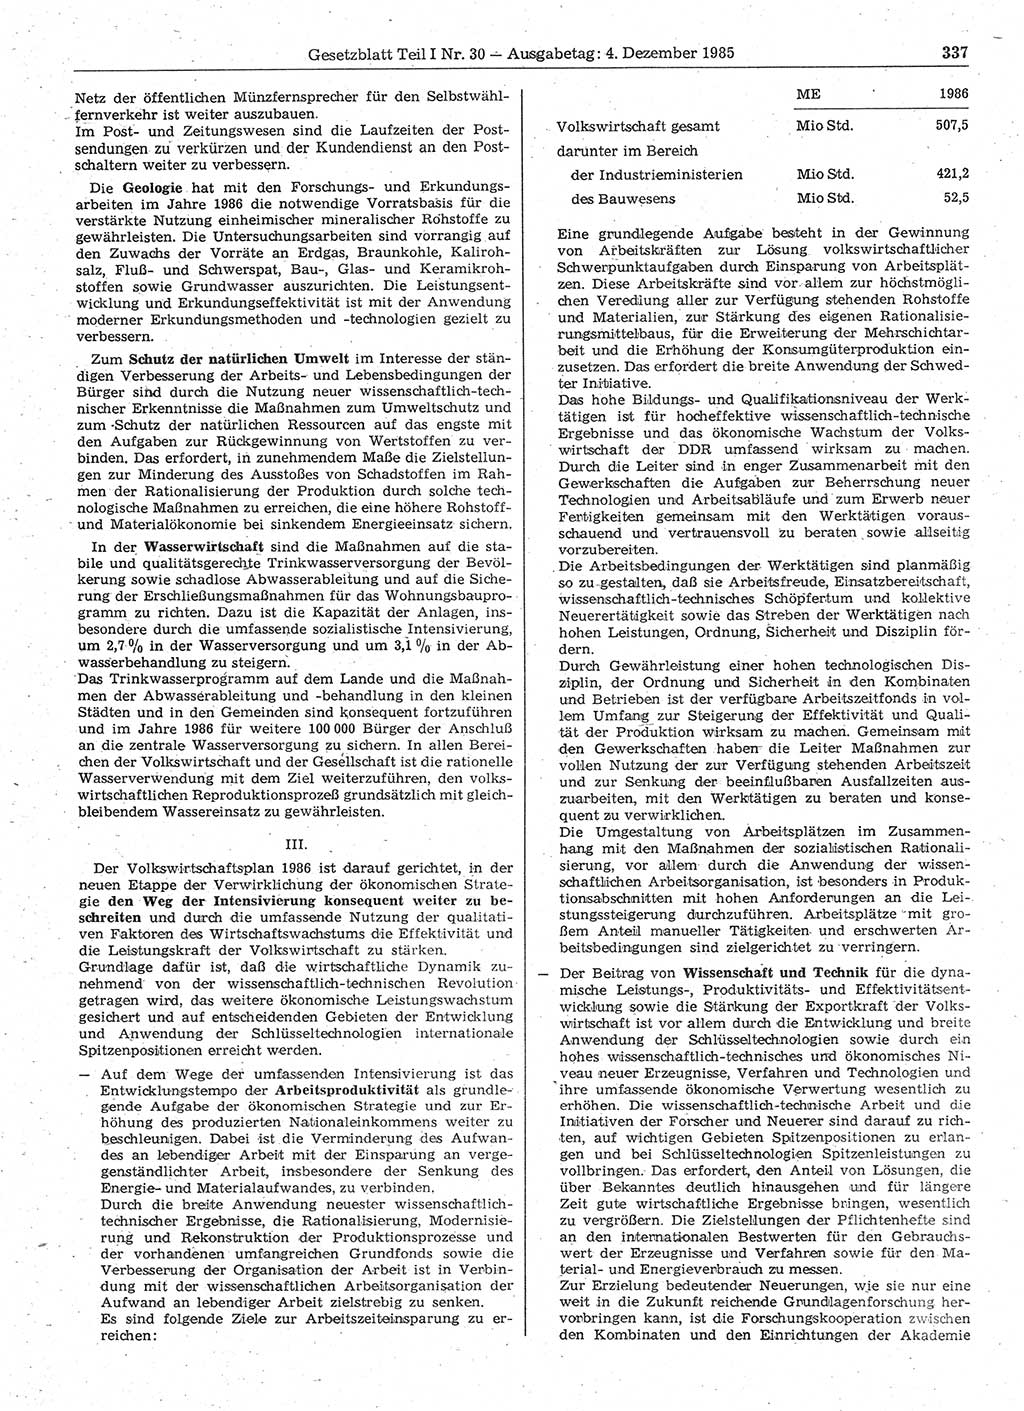 Gesetzblatt (GBl.) der Deutschen Demokratischen Republik (DDR) Teil Ⅰ 1985, Seite 337 (GBl. DDR Ⅰ 1985, S. 337)